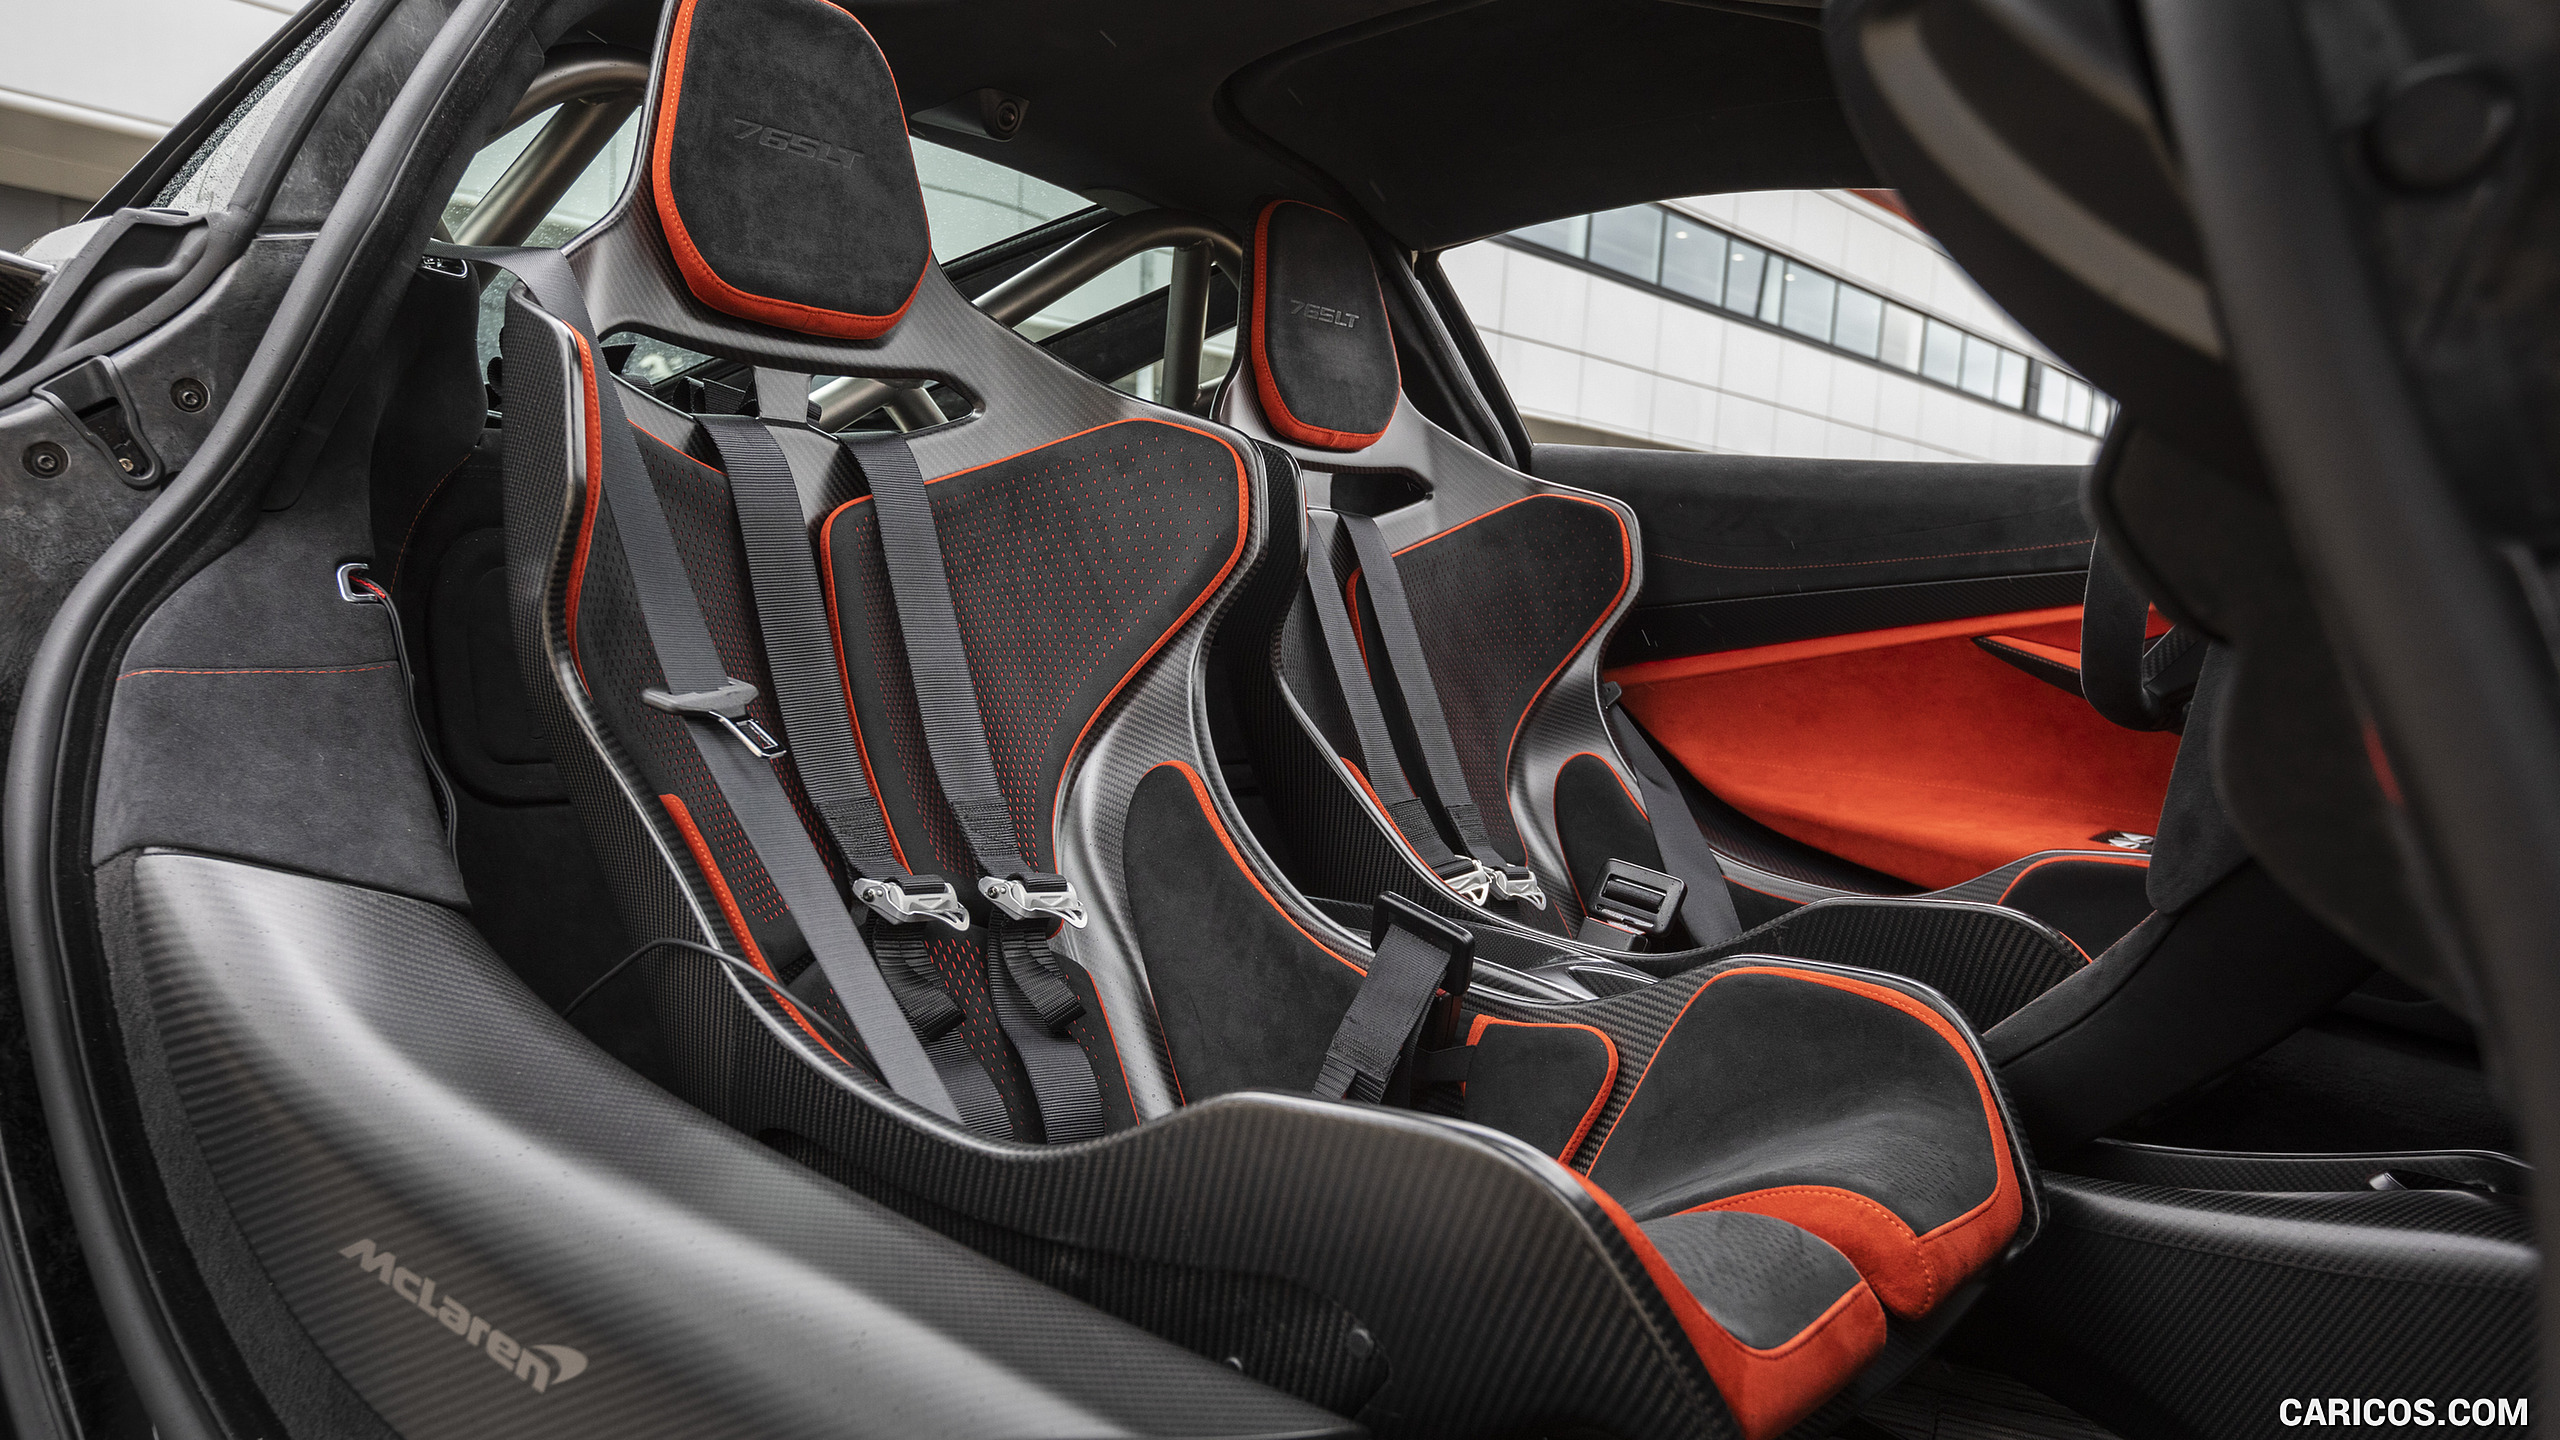 2021 McLaren 765LT - Interior, Seats, #142 of 159